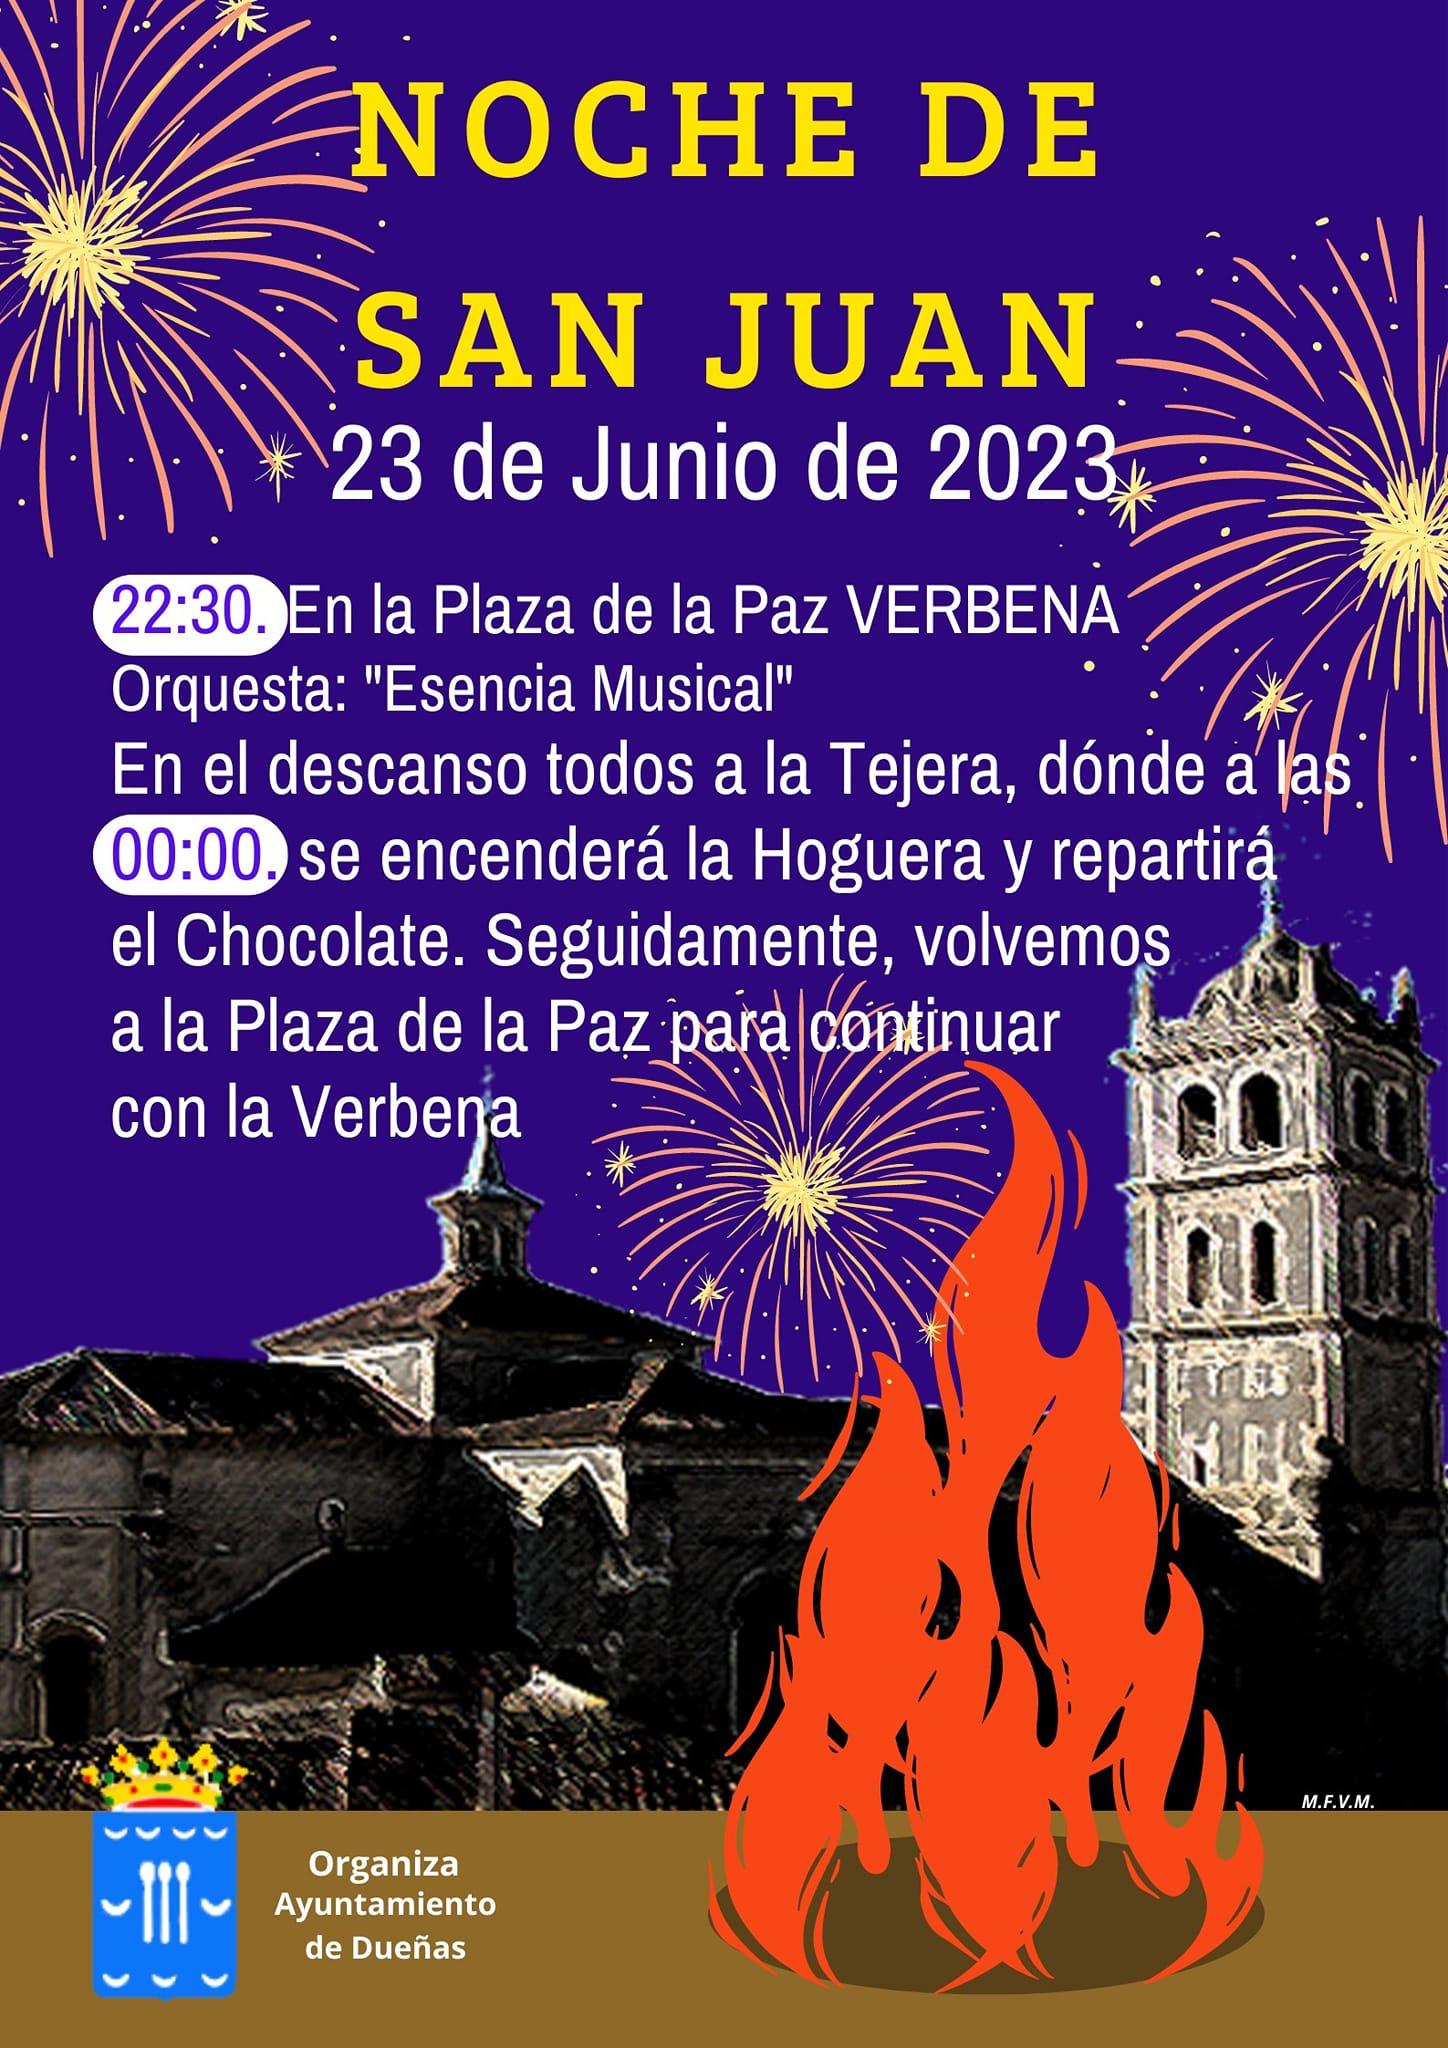 Noche de San Juan - Dueñas0